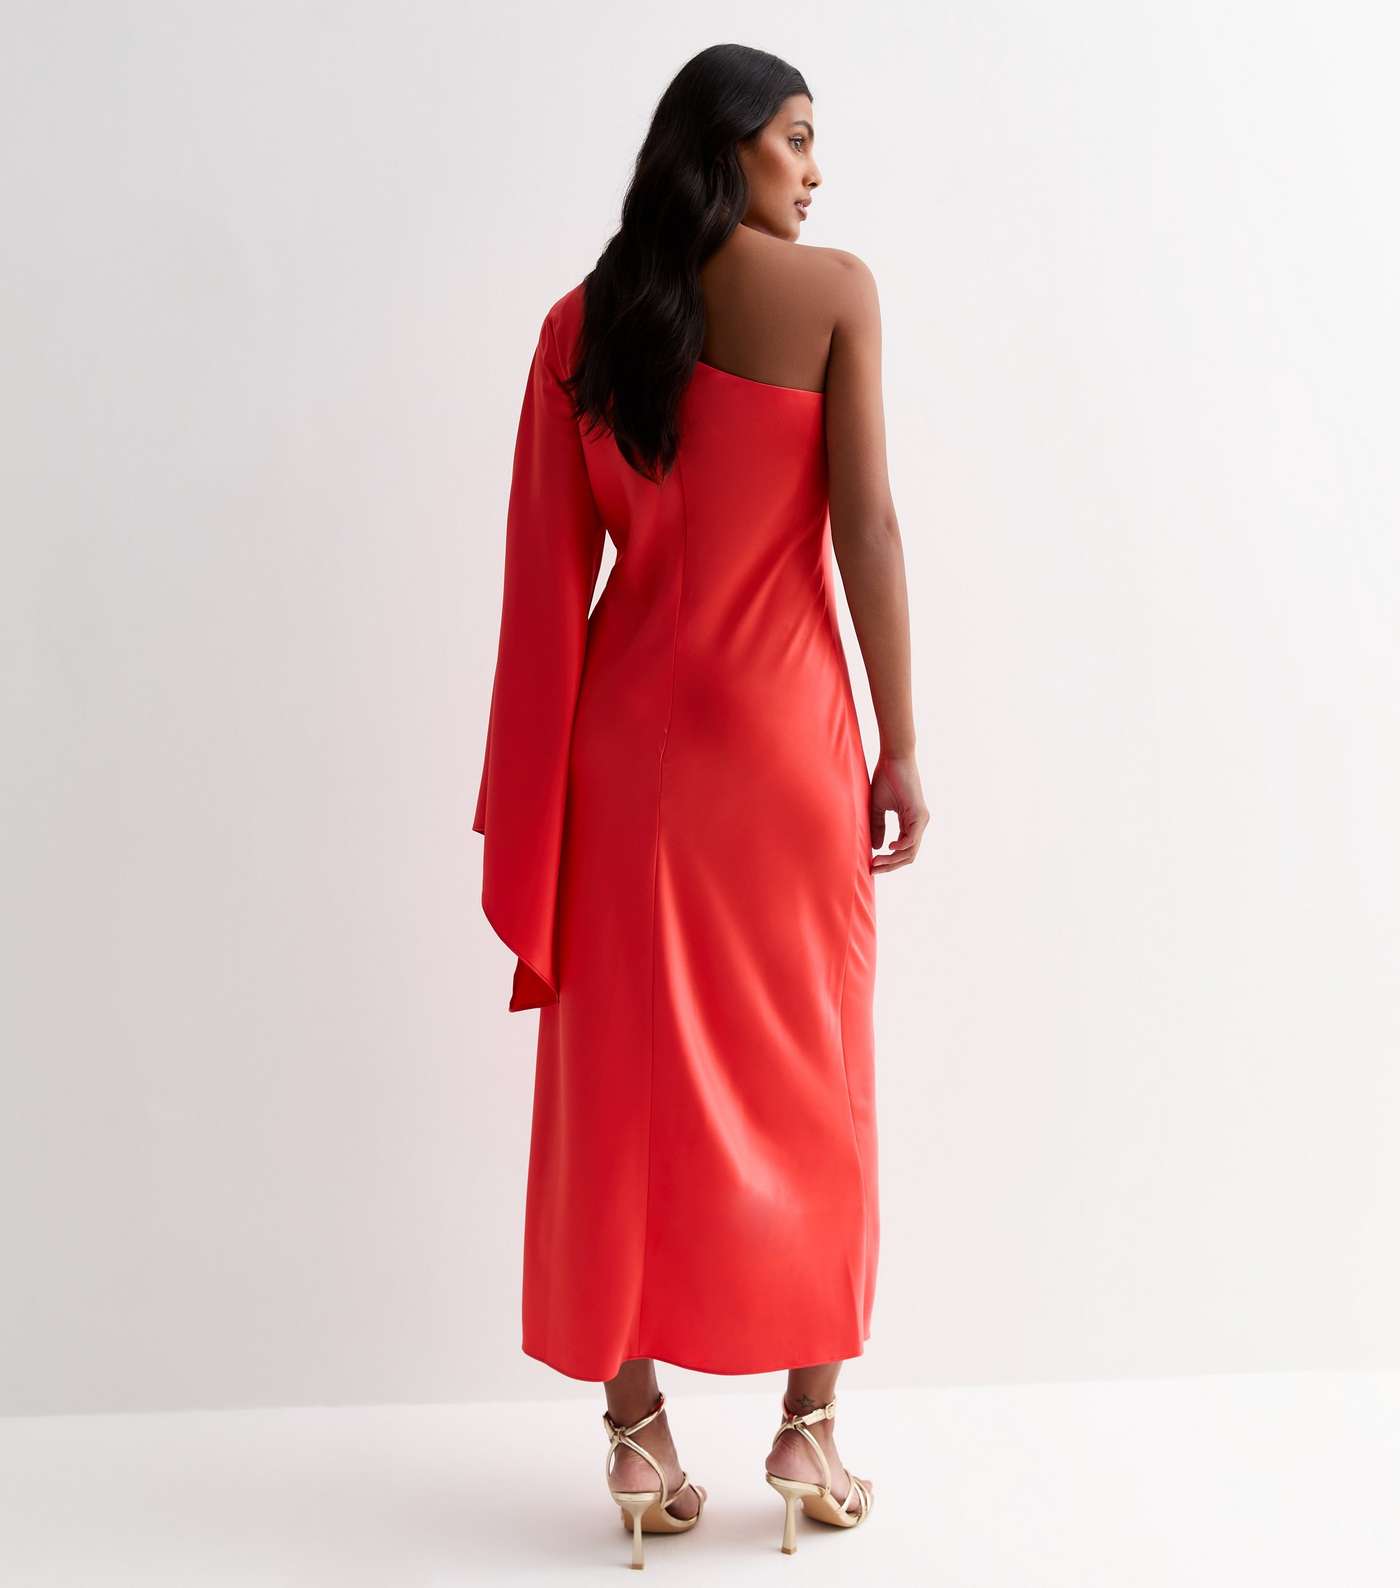 Red Satin One Shoulder Maxi Dress Image 4